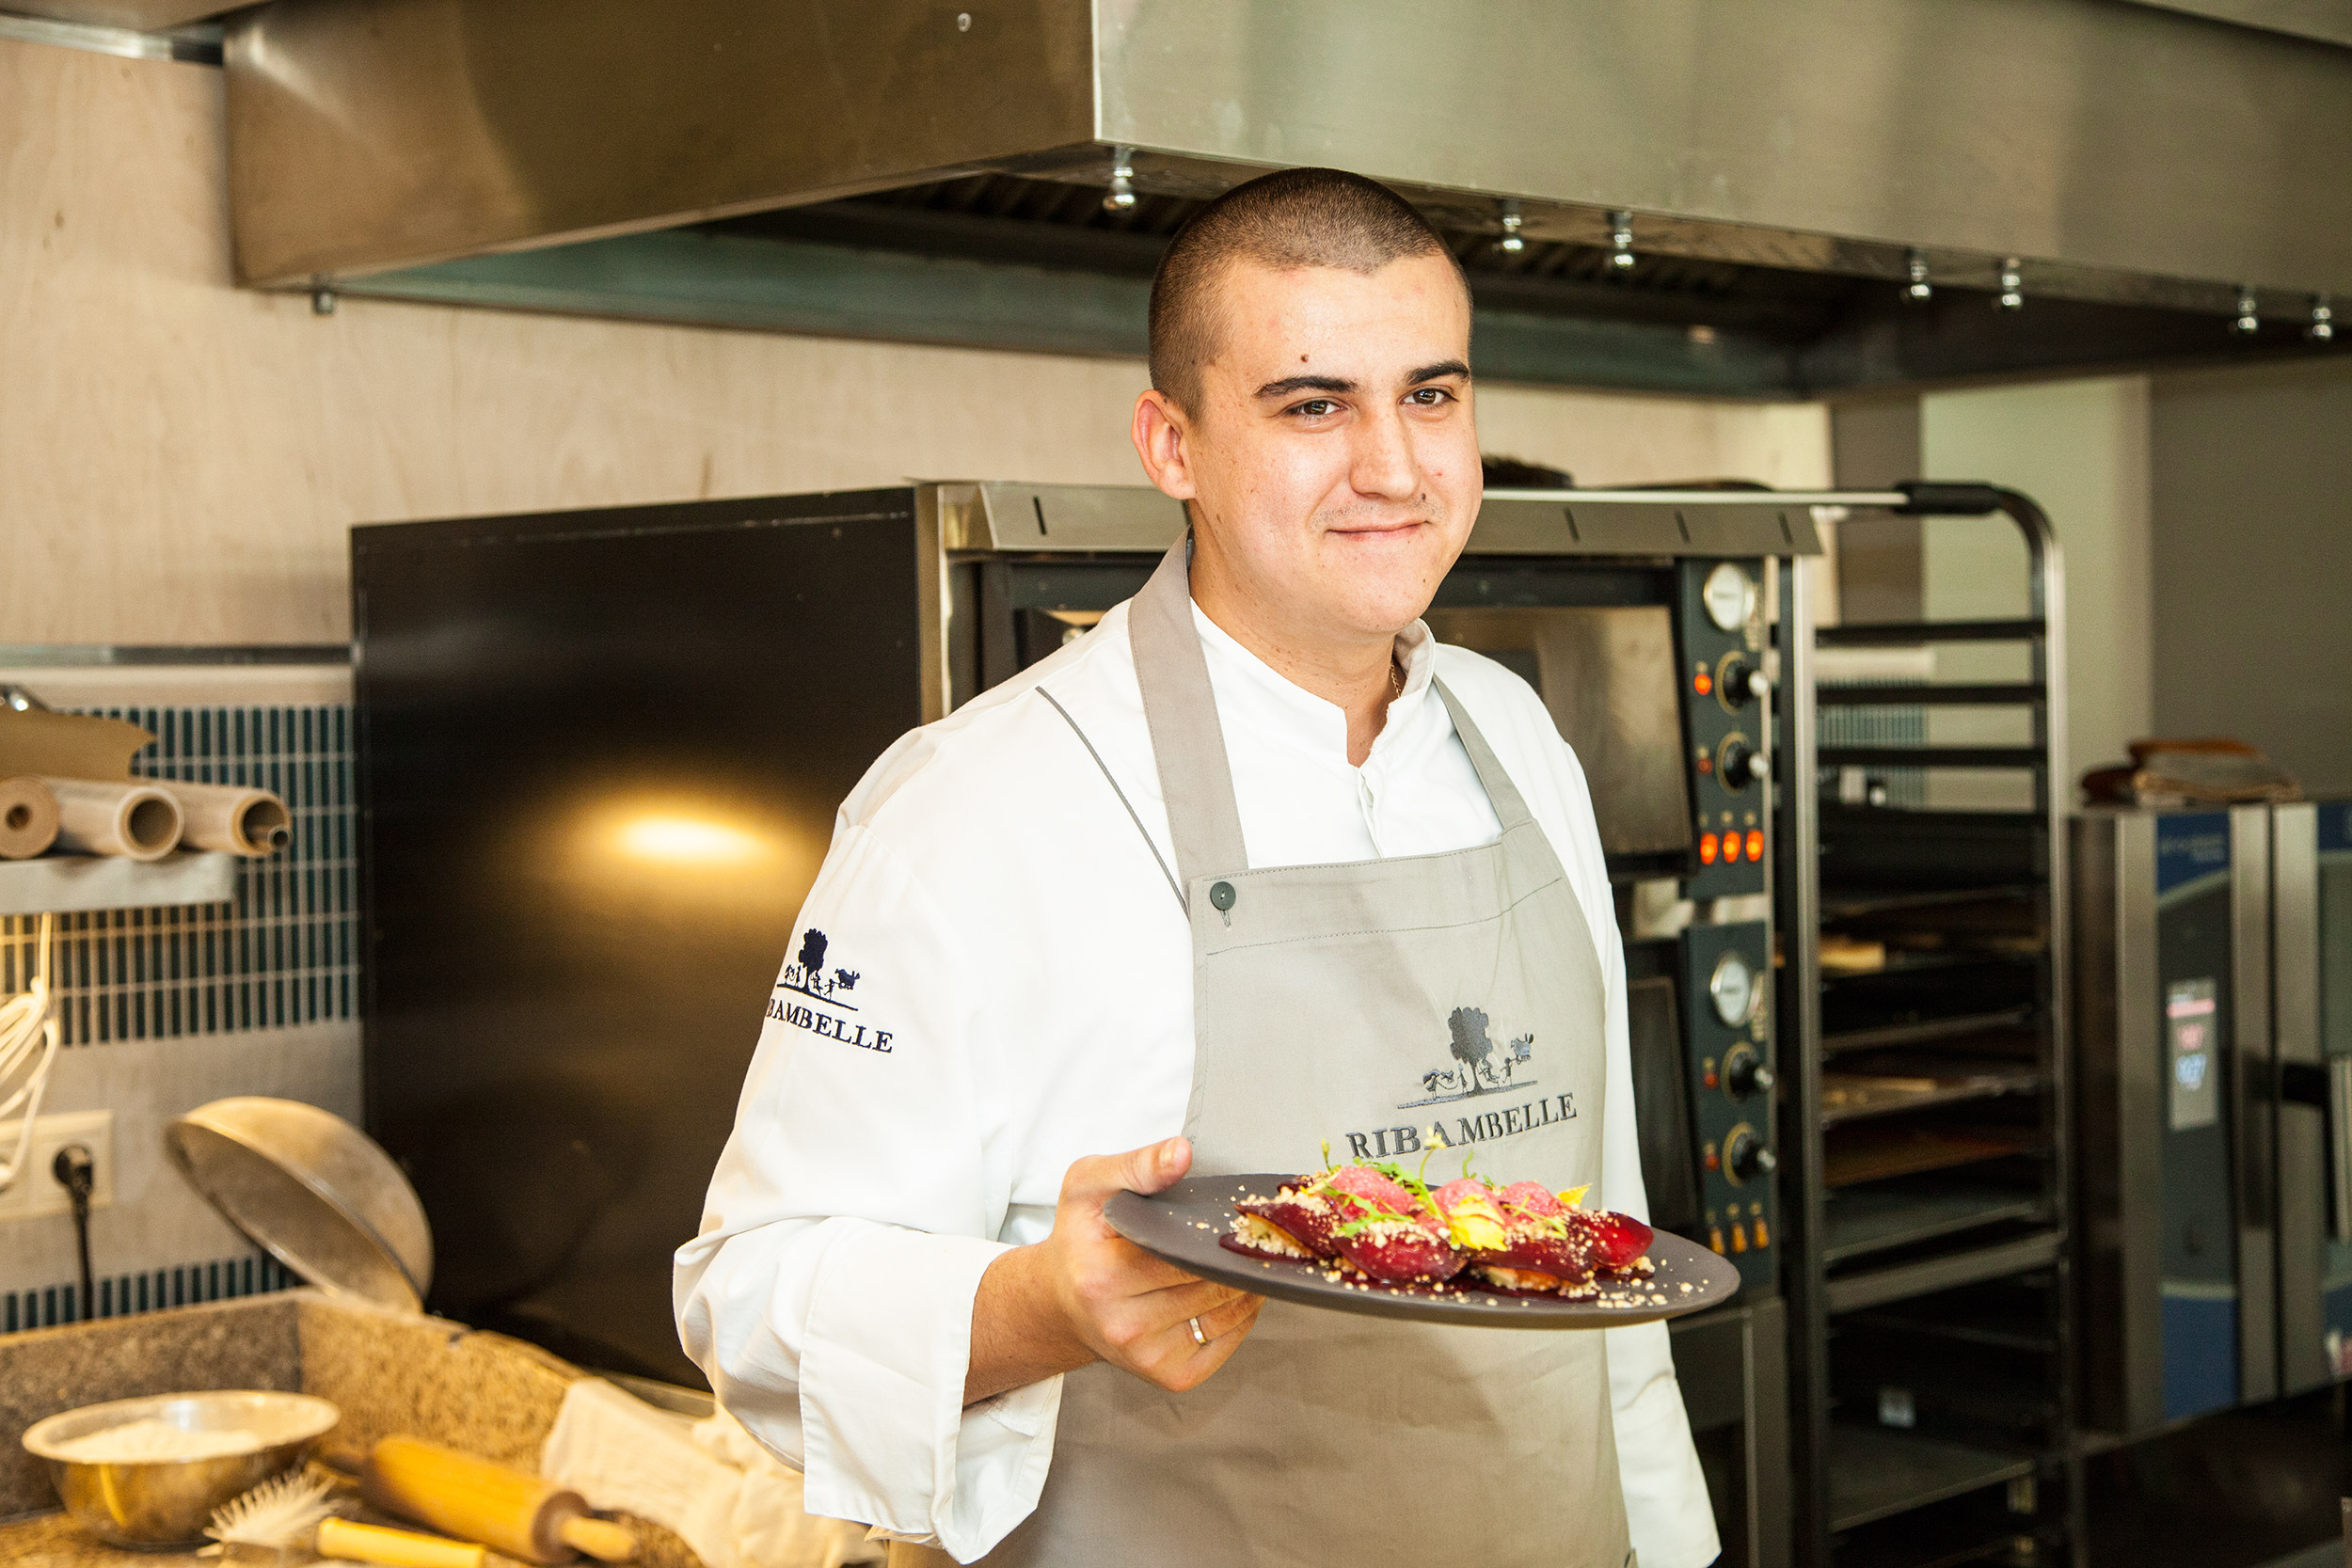 Шеф-повар Ribambelle Михаил Кукленко провел  мастер-класс по приготовлению равиоли – традиционного блюда региона, но в абсолютно новой подаче. 